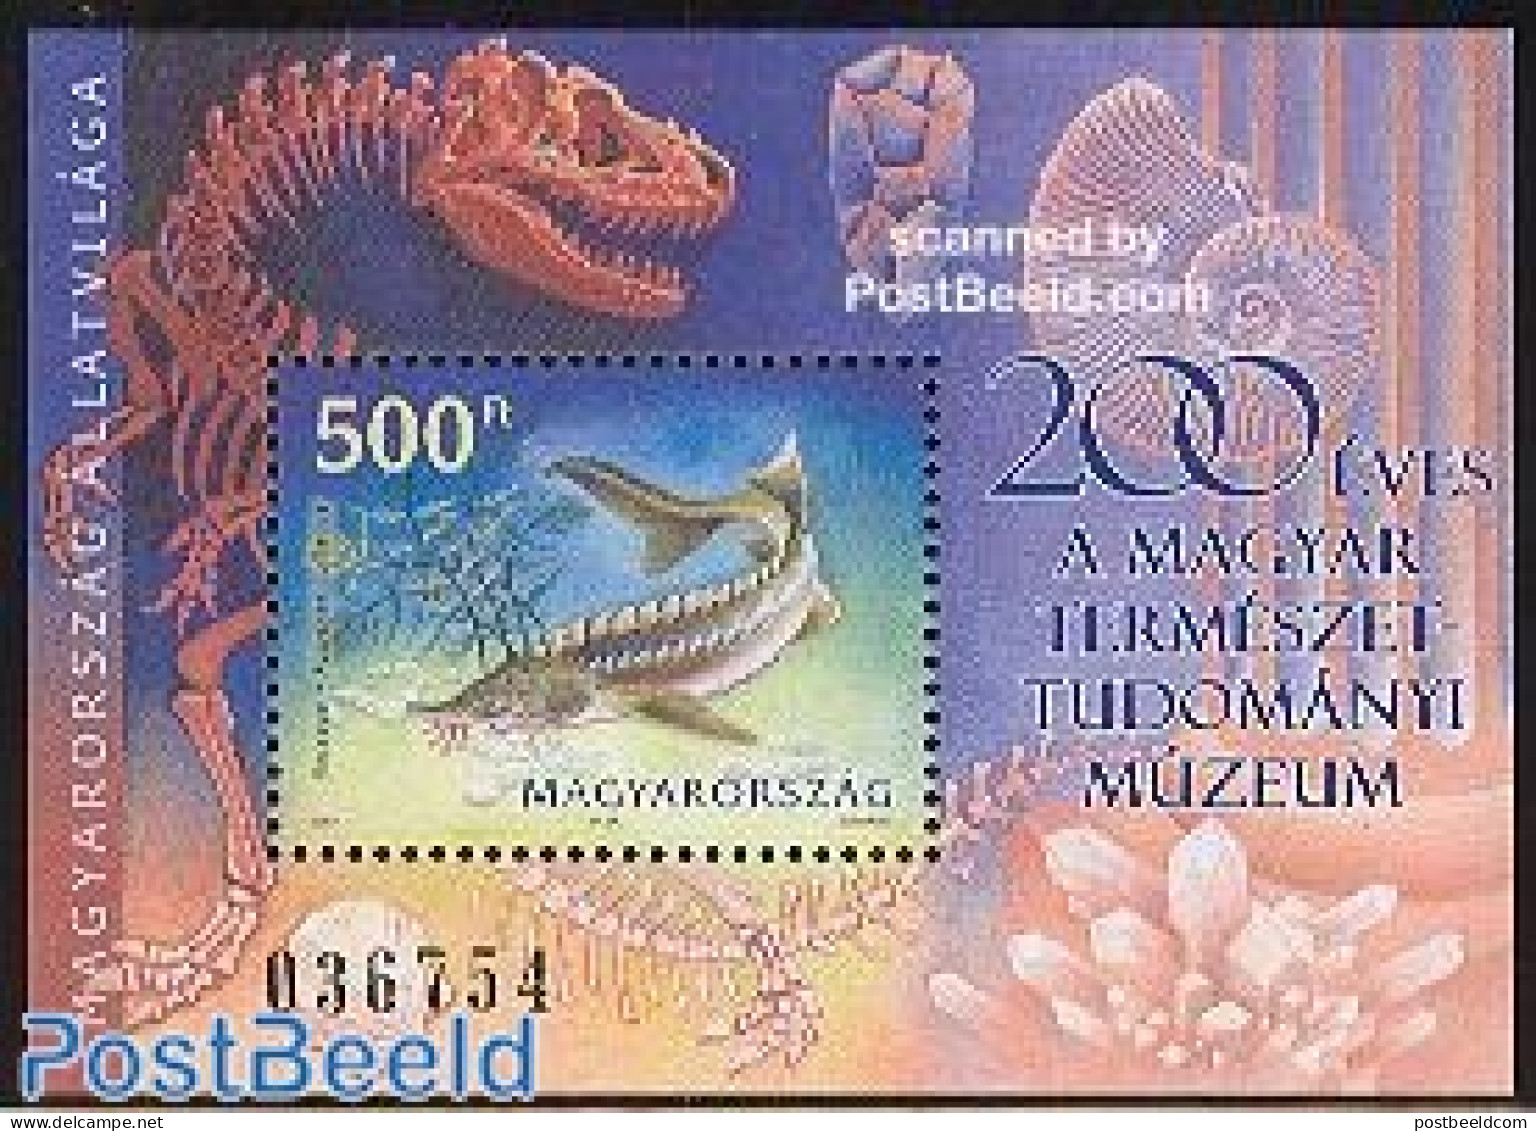 Hungary 2002 Fish S/s, Mint NH, Nature - Fish - Prehistoric Animals - Nuovi